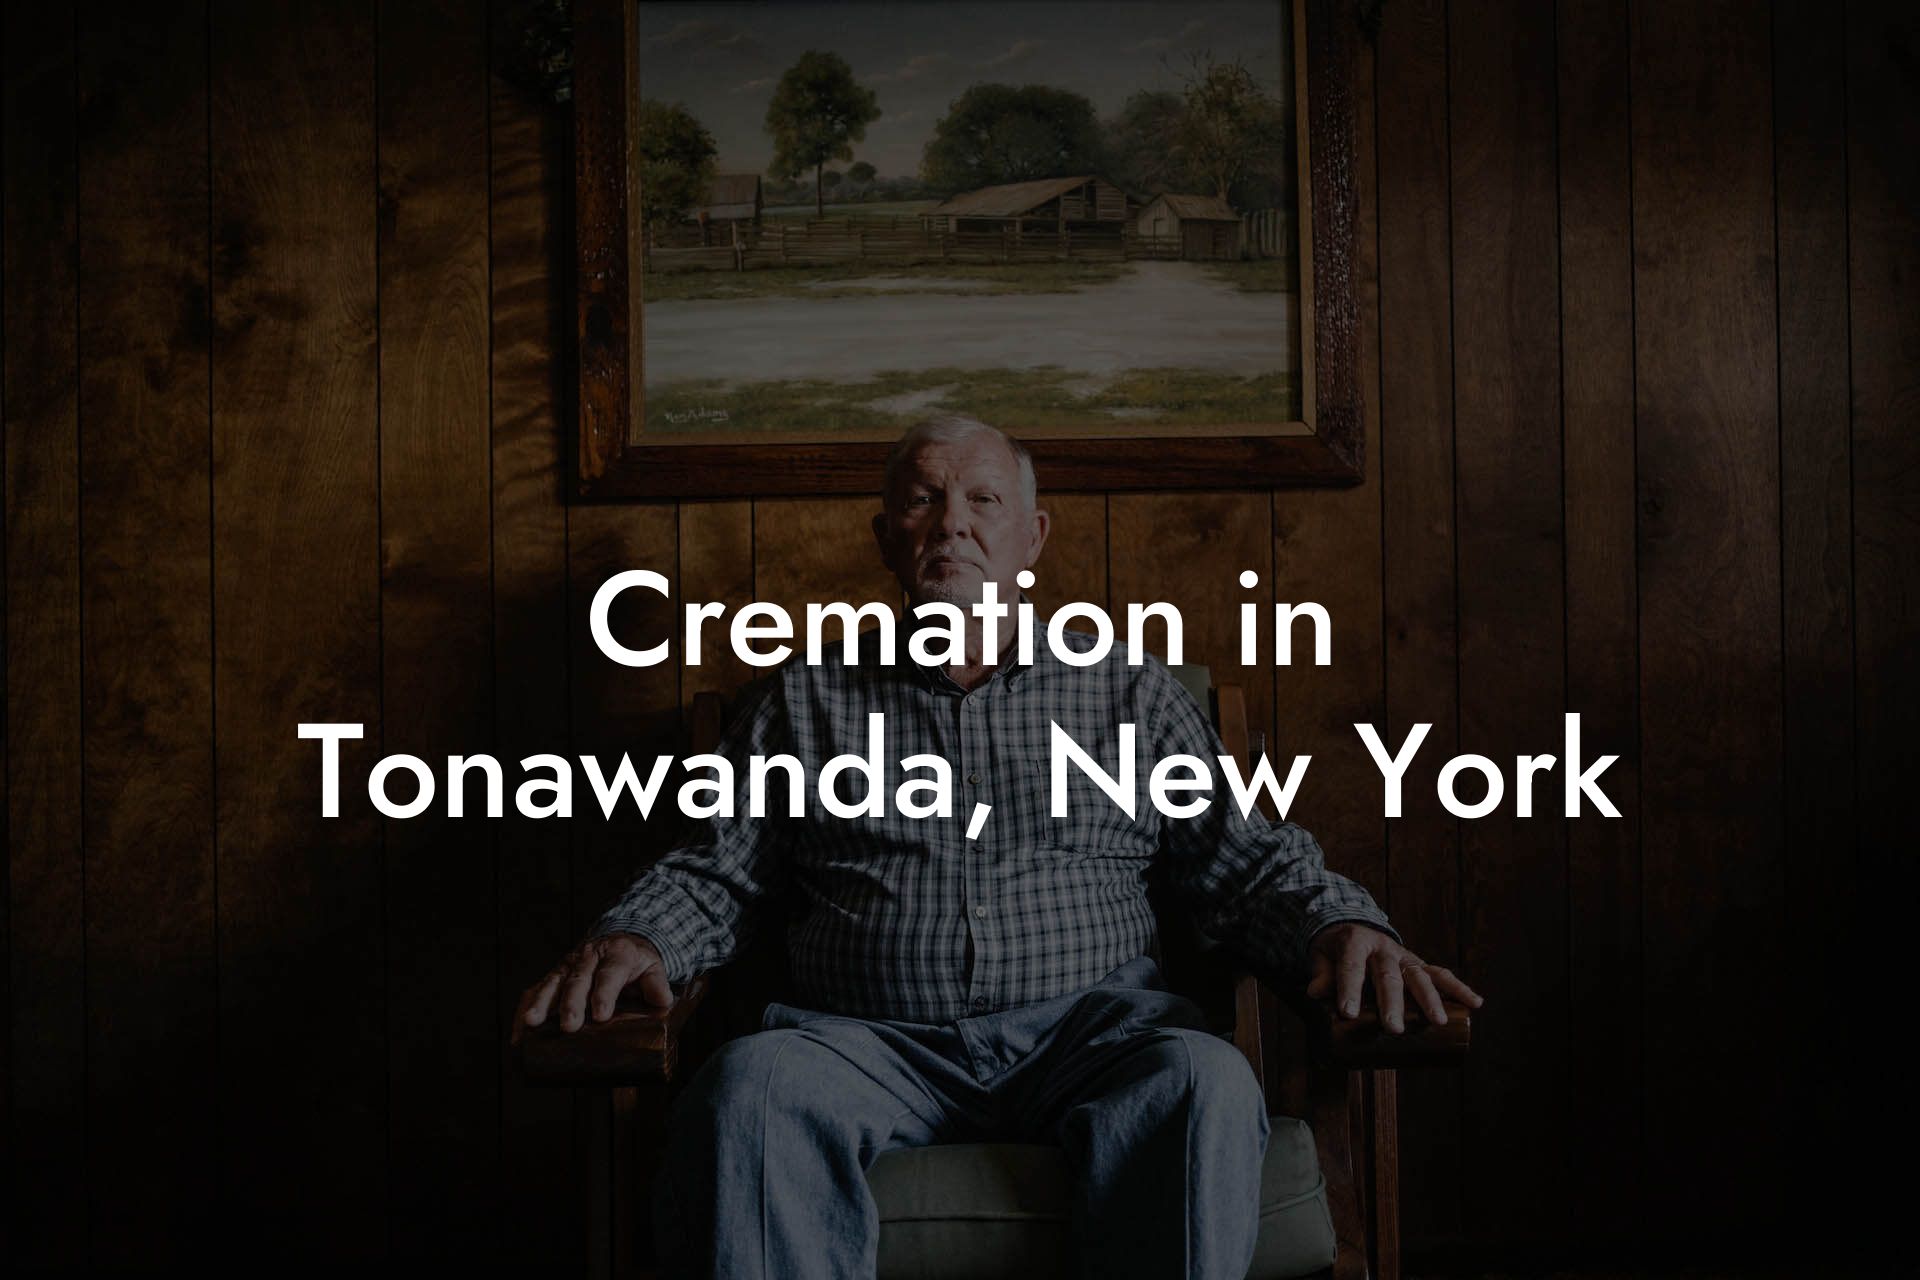 Cremation in Tonawanda, New York